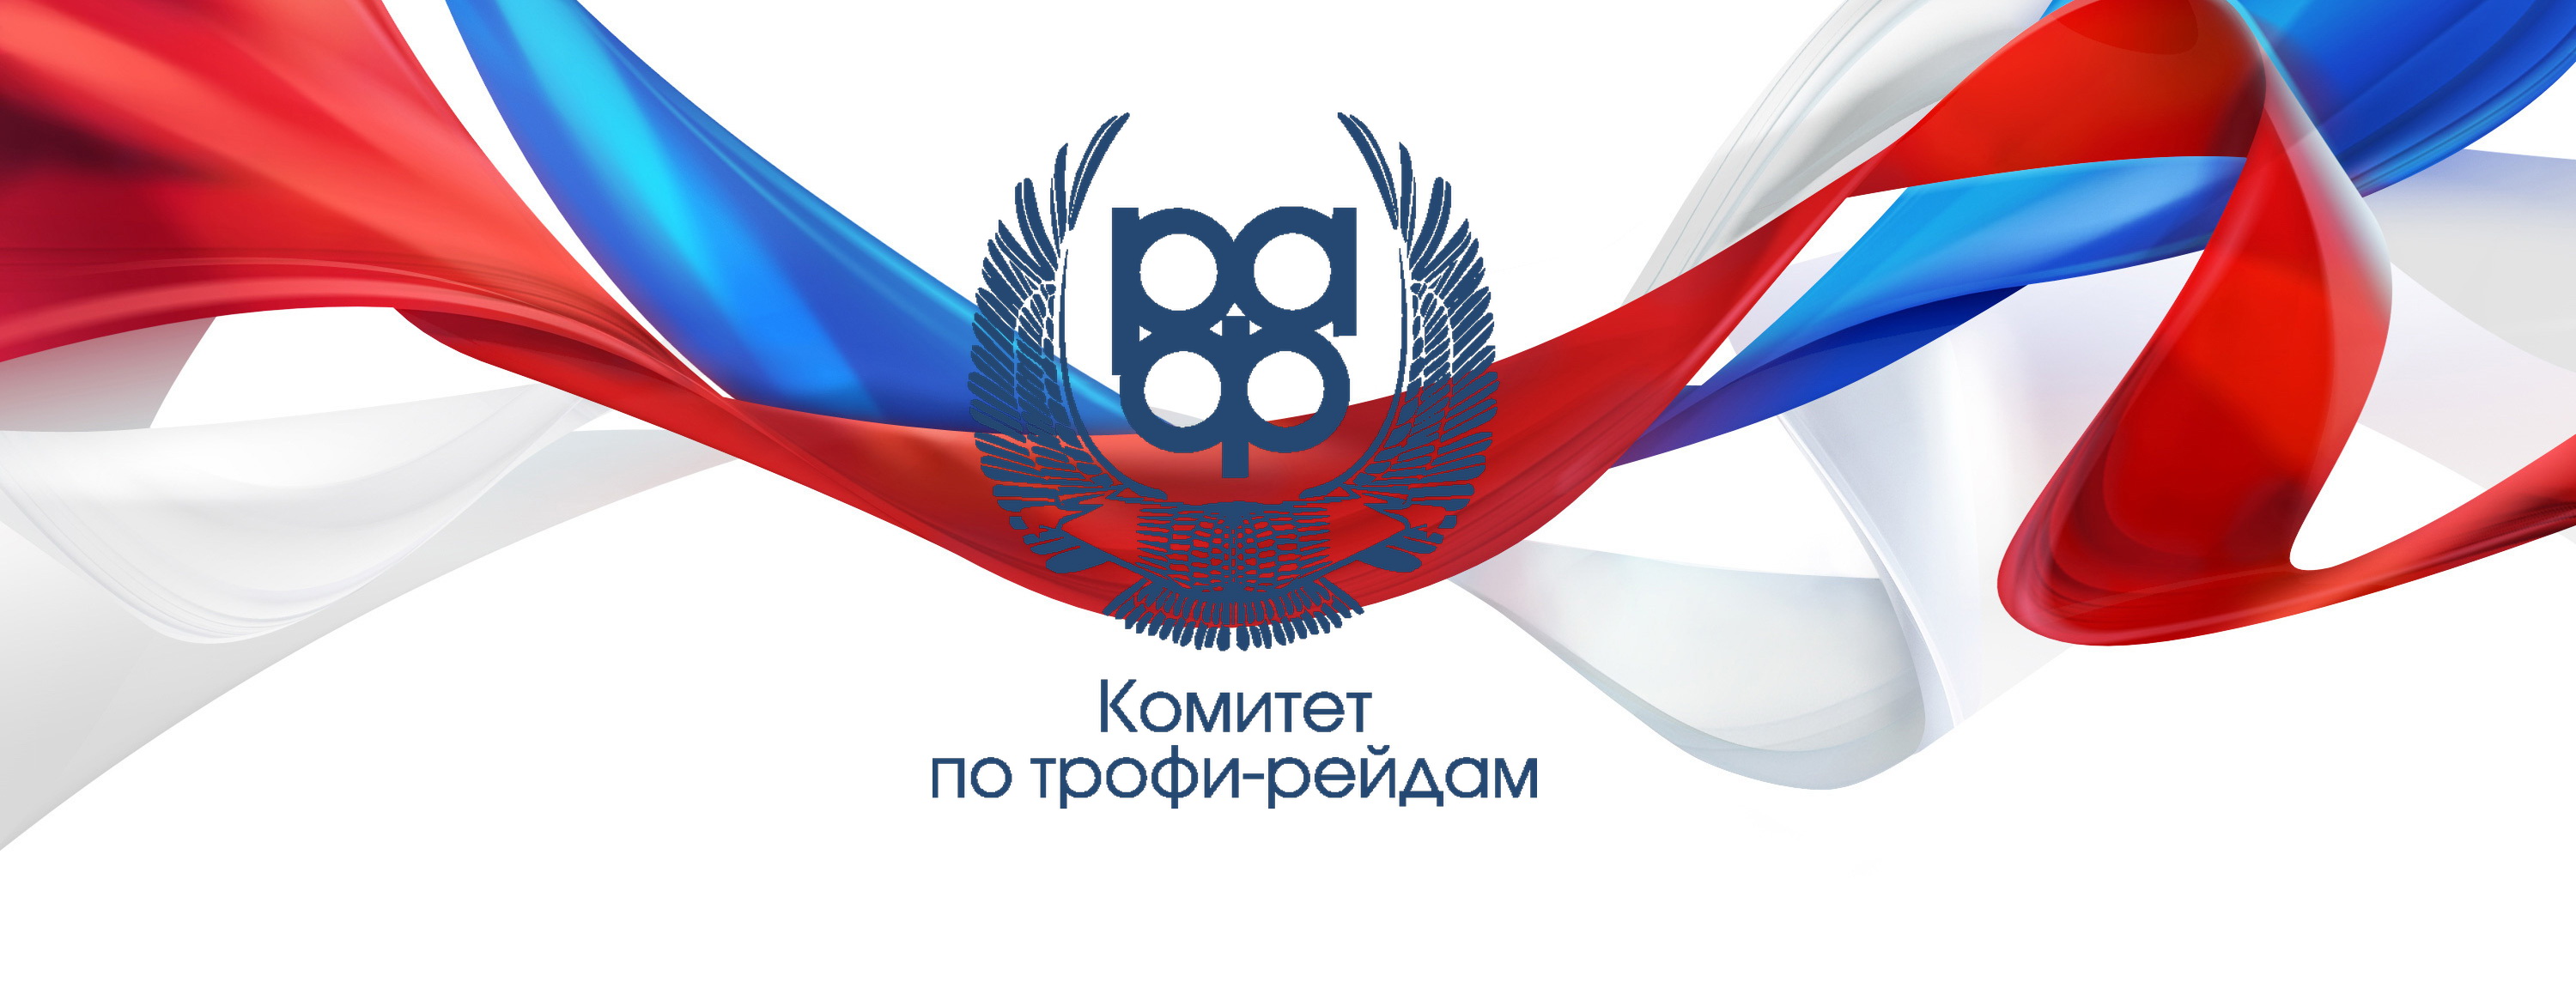 Открыт прием заявок на первый этап Чемпионата России